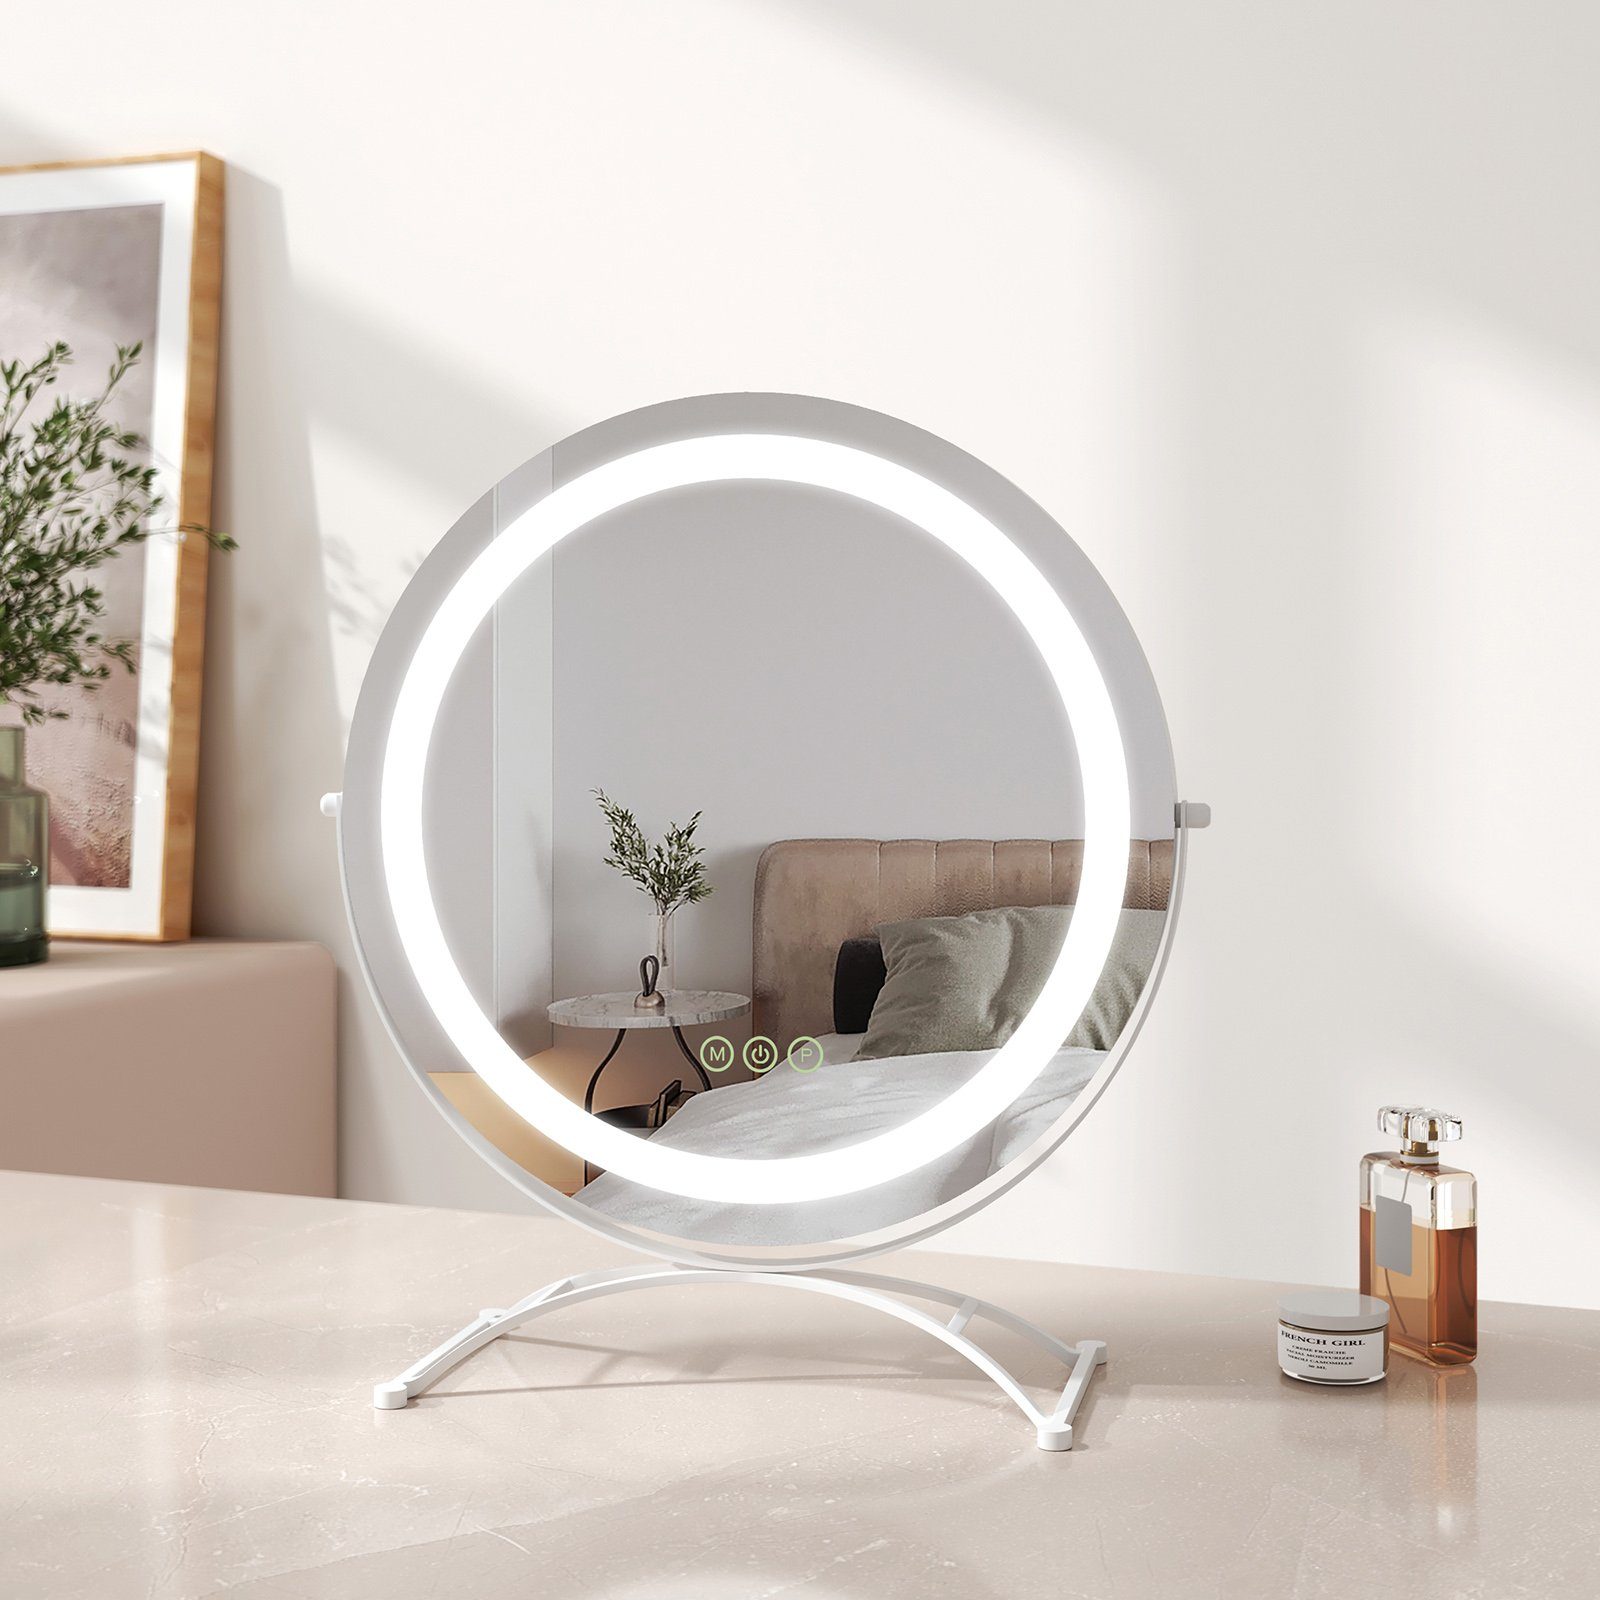 Drehbar 3 mit Touch, Kosmetikspiegel Schminkspiegel Memory-Funktion, Beleuchtung, Schminkspiegel Lichtfarben mit Tischspiegel EMKE LED Runder 360° Weiß Dimmbar,